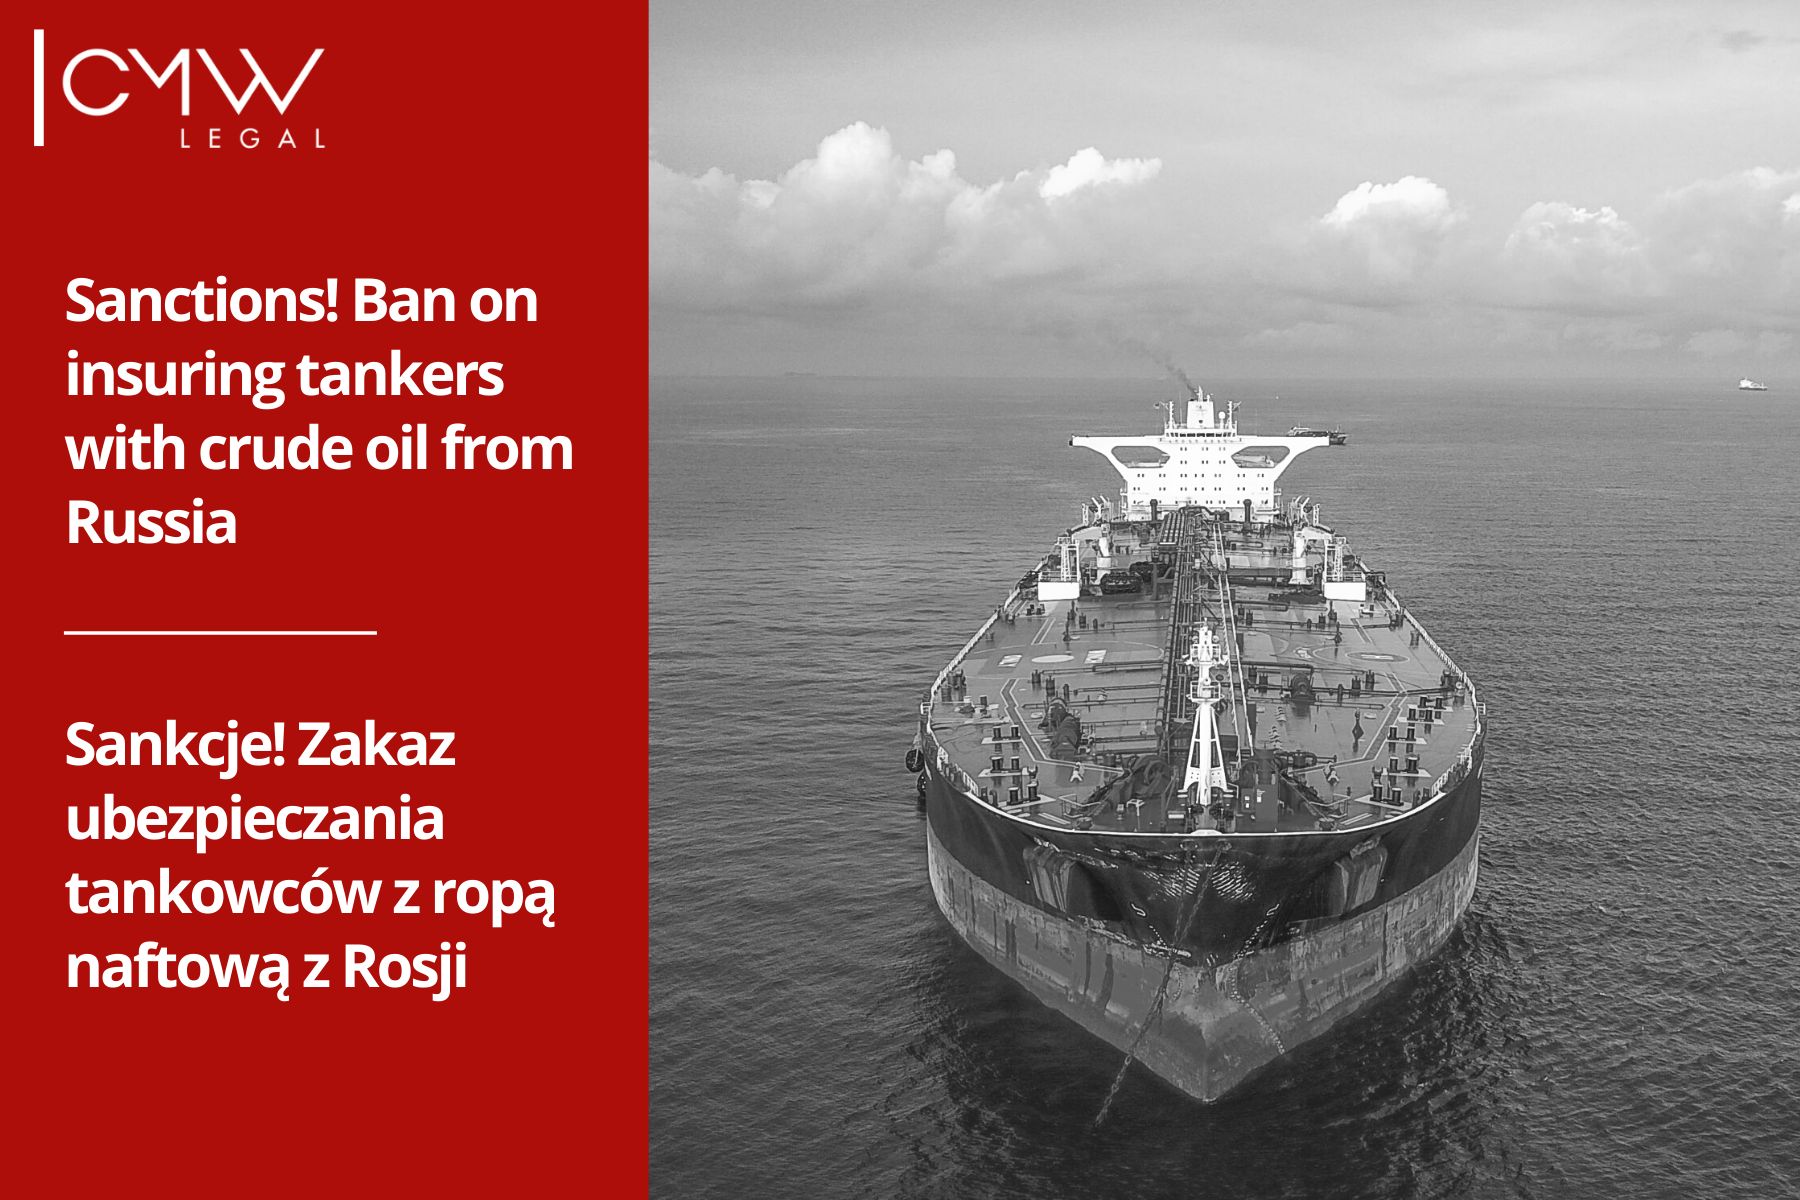  Sankcje! Zakaz ubezpieczania tankowców z ropą naftową z Rosji